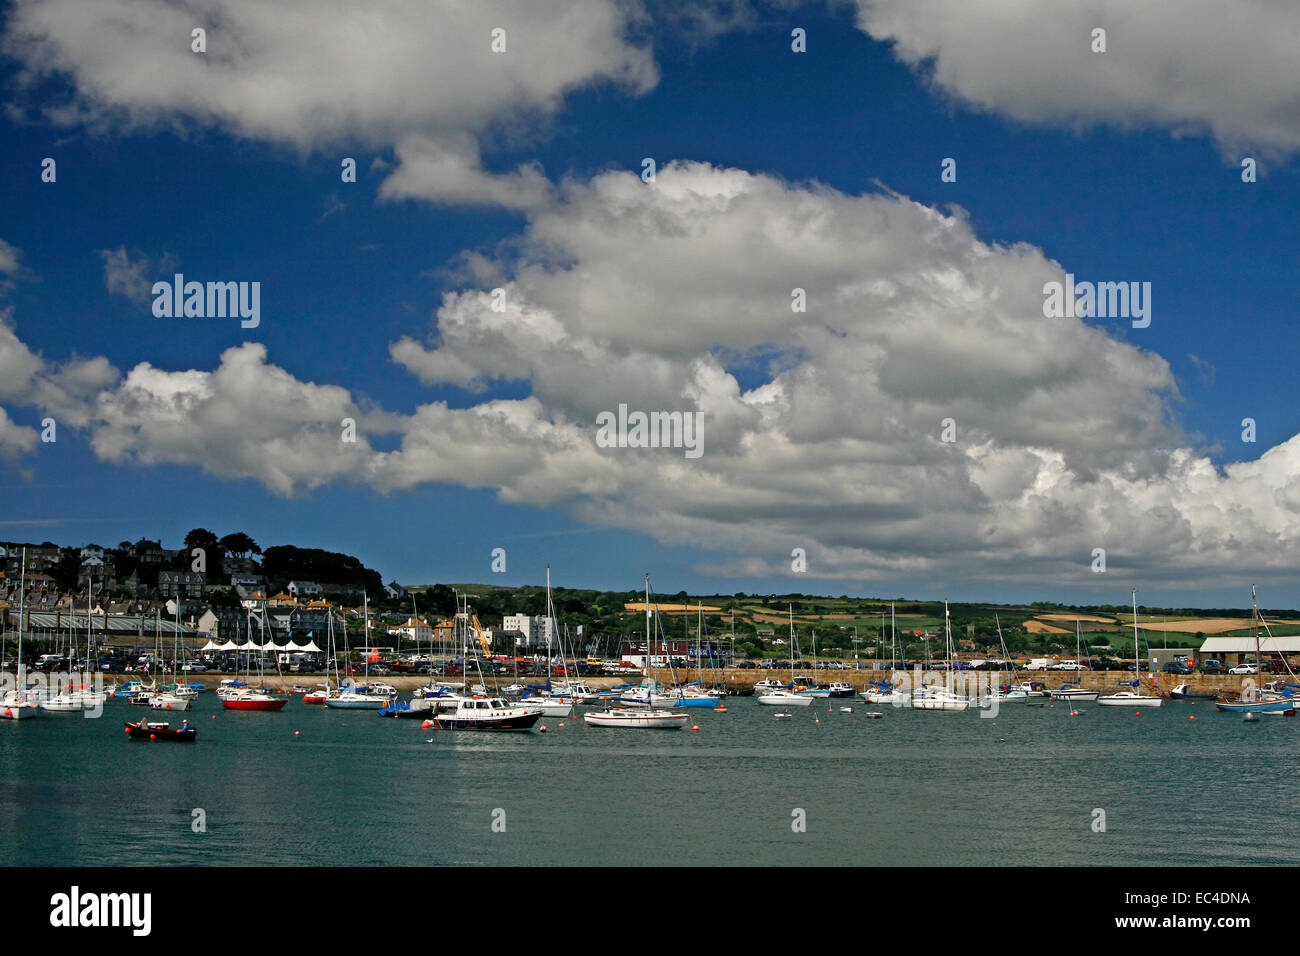 Harbor in Penzance, Cornwall, Southwest England, UK Stock Photo